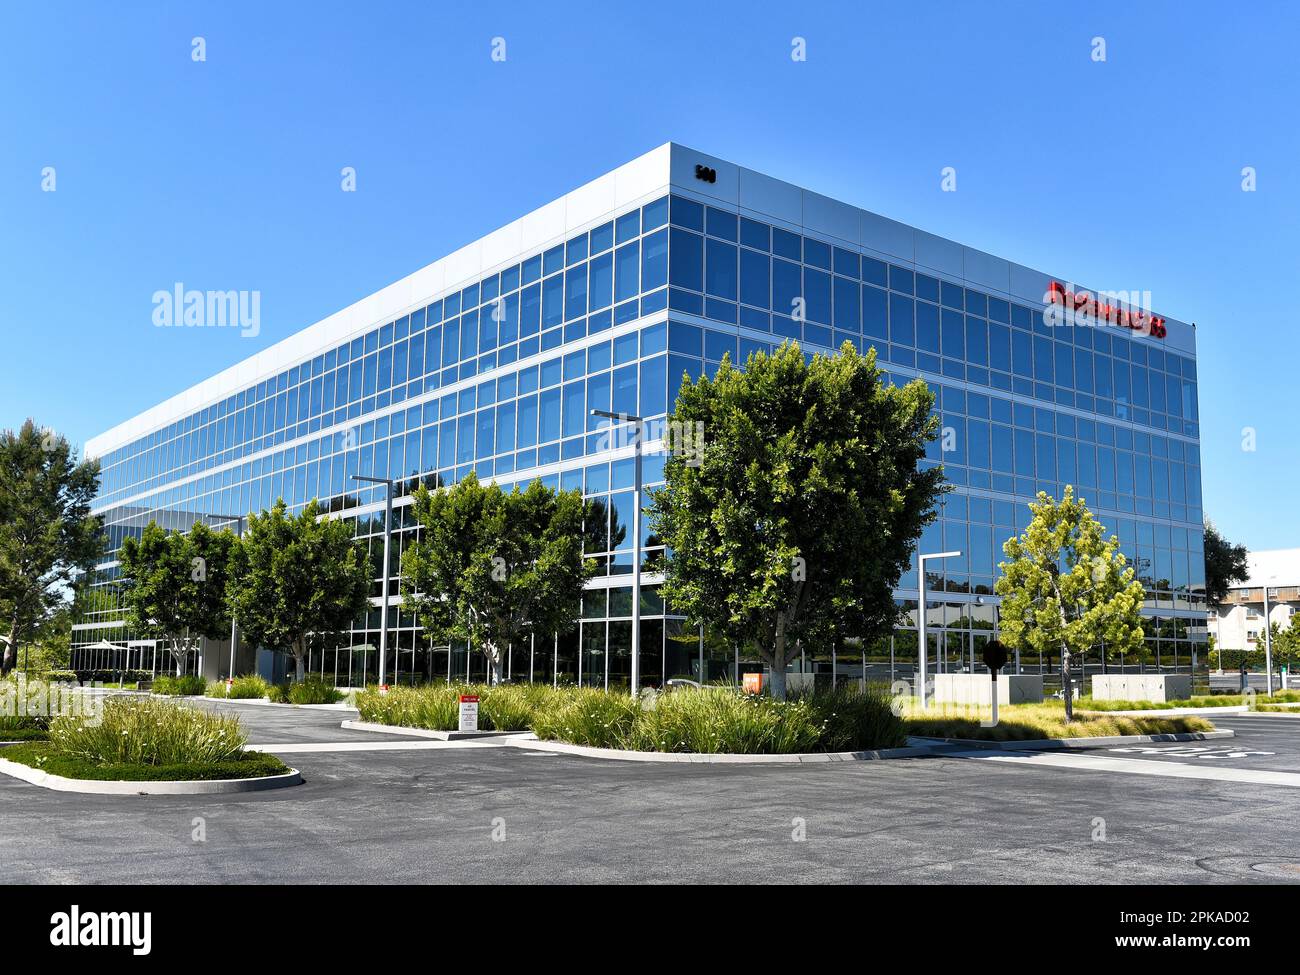 IRVINE, KALIFORNIEN - 2. April 2023: Das Restaurant365-Gebäude, das Unternehmen bietet cloudbasierte Restaurantmanagementsoftware an. Stockfoto